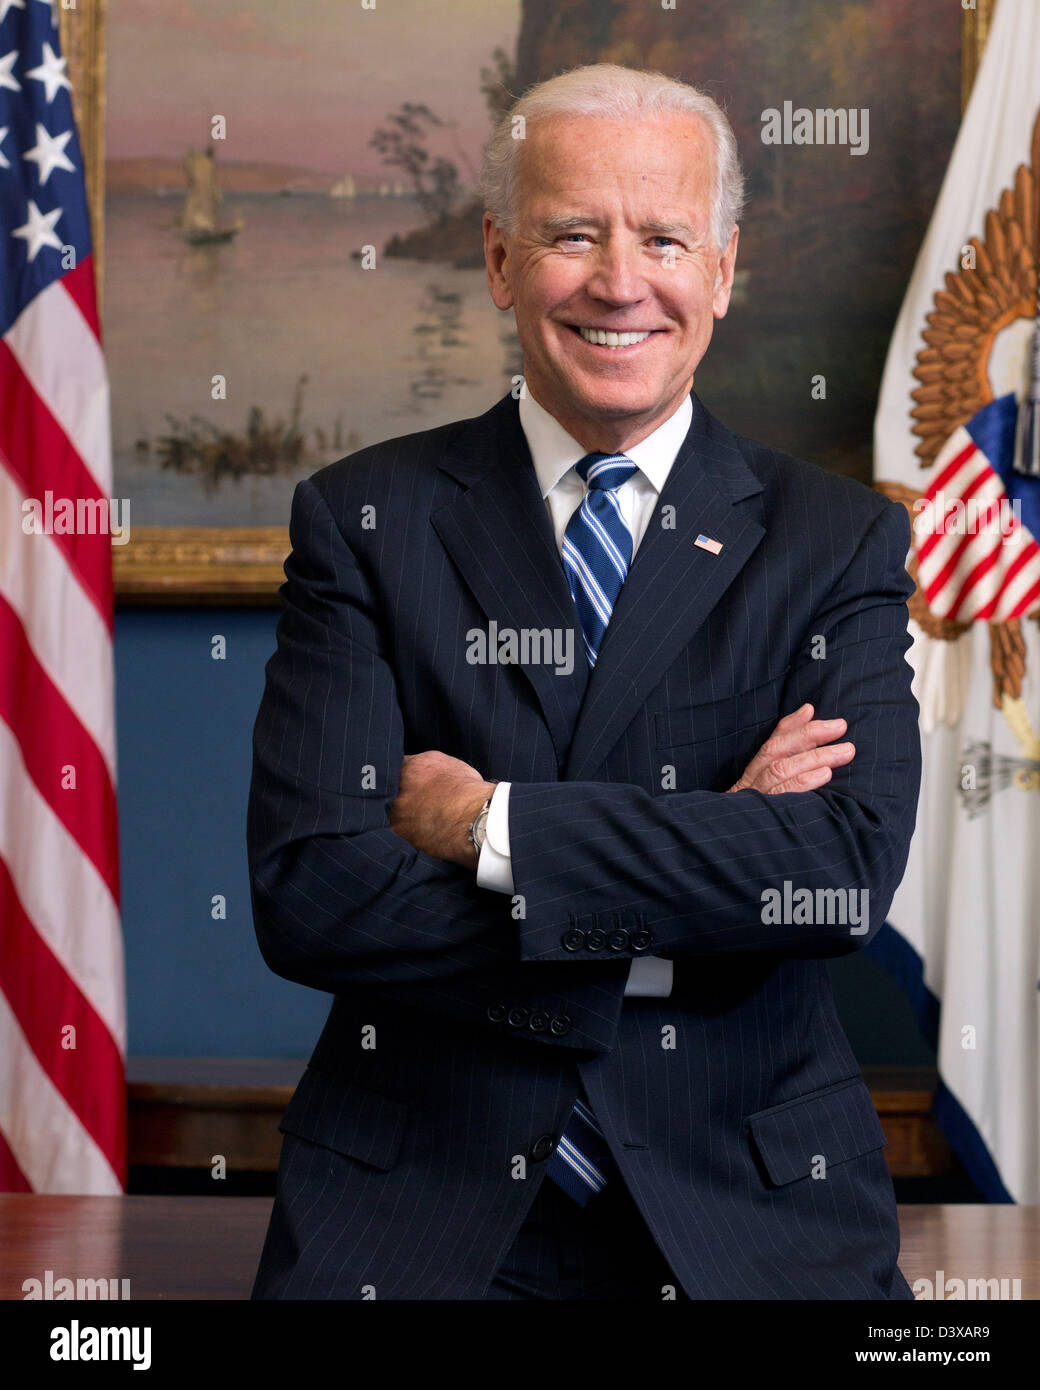 Portrait officiel du Vice-président américain Joe Biden dans son bureau de l'aile ouest de la Maison Blanche le 10 janvier 2013 à Washington, DC. Banque D'Images